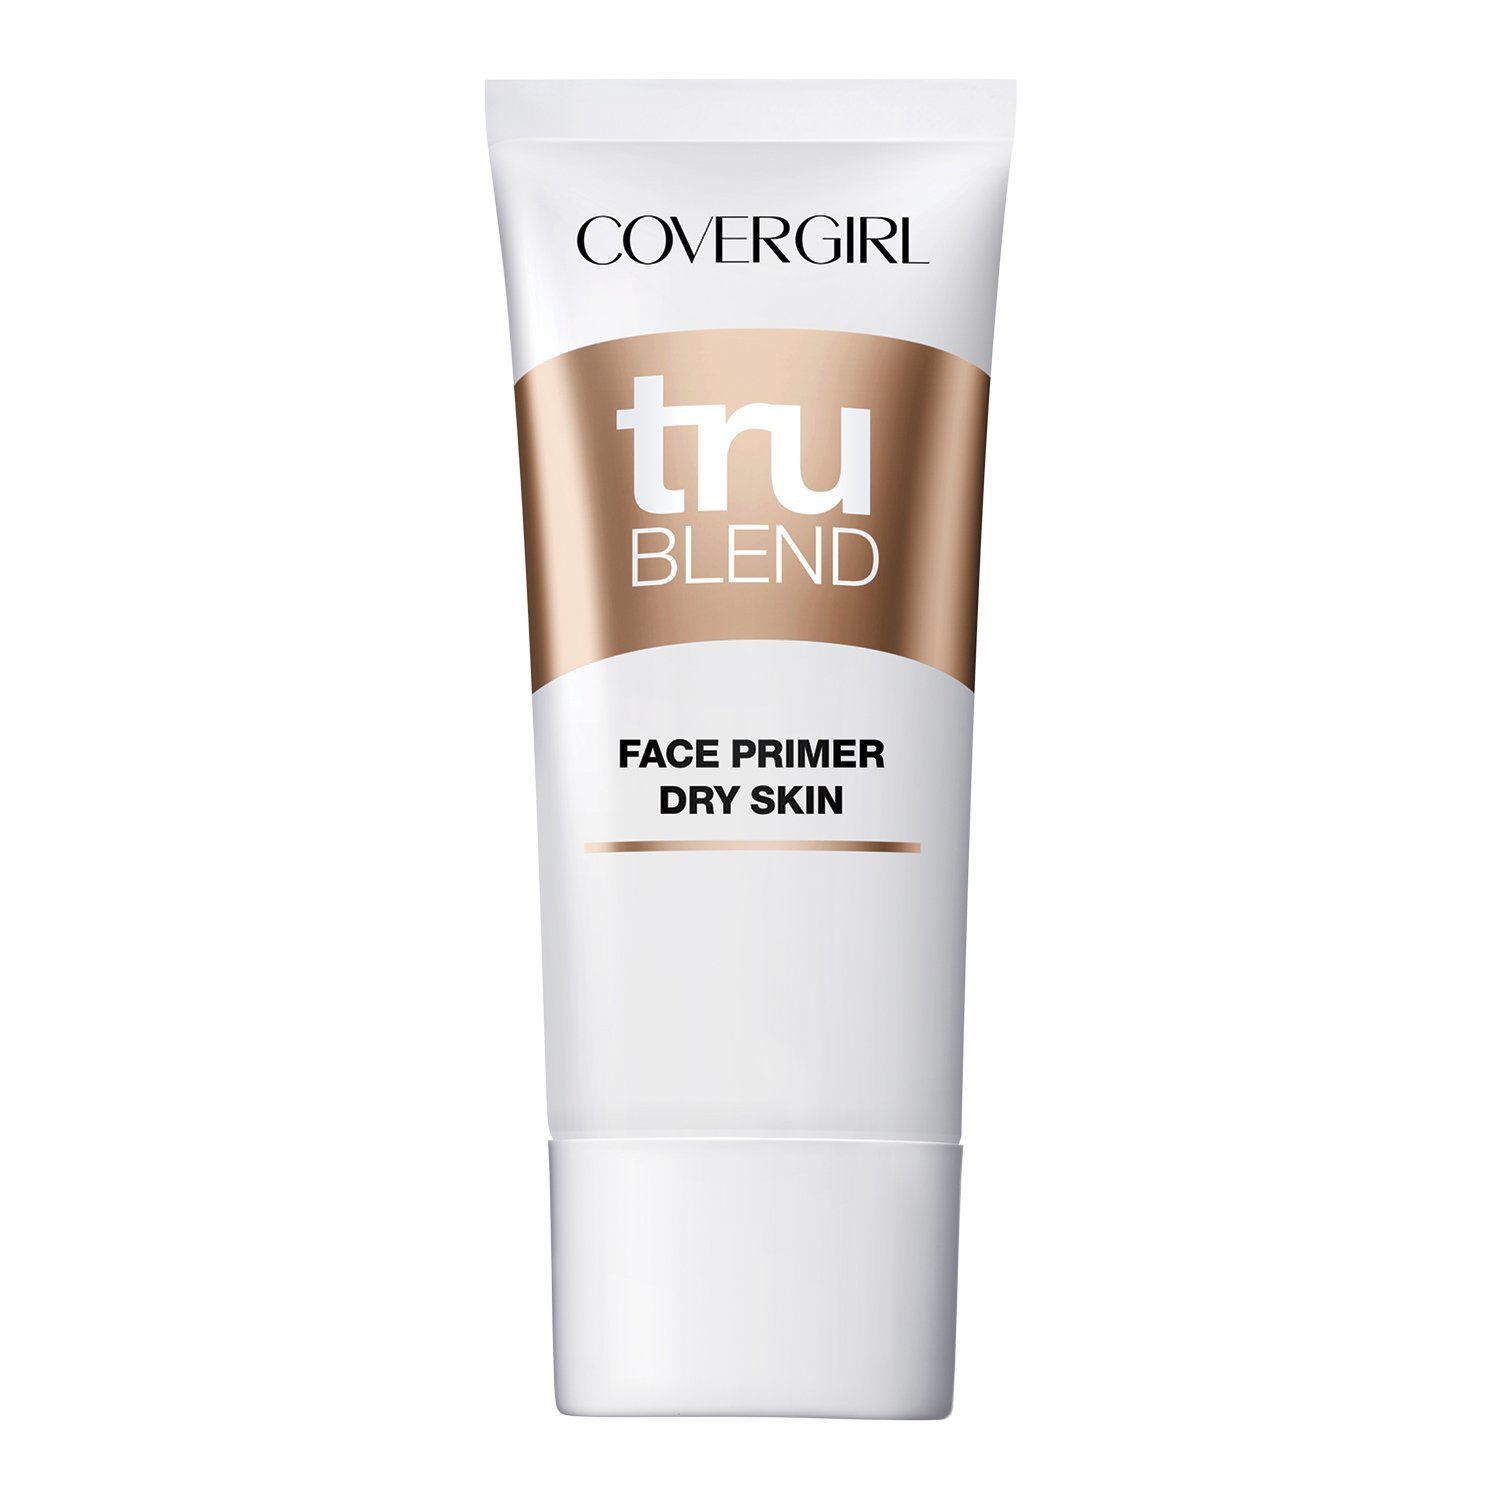 COVERGIRL truBlend Primer for Dry Skin, 1 oz - $15.67